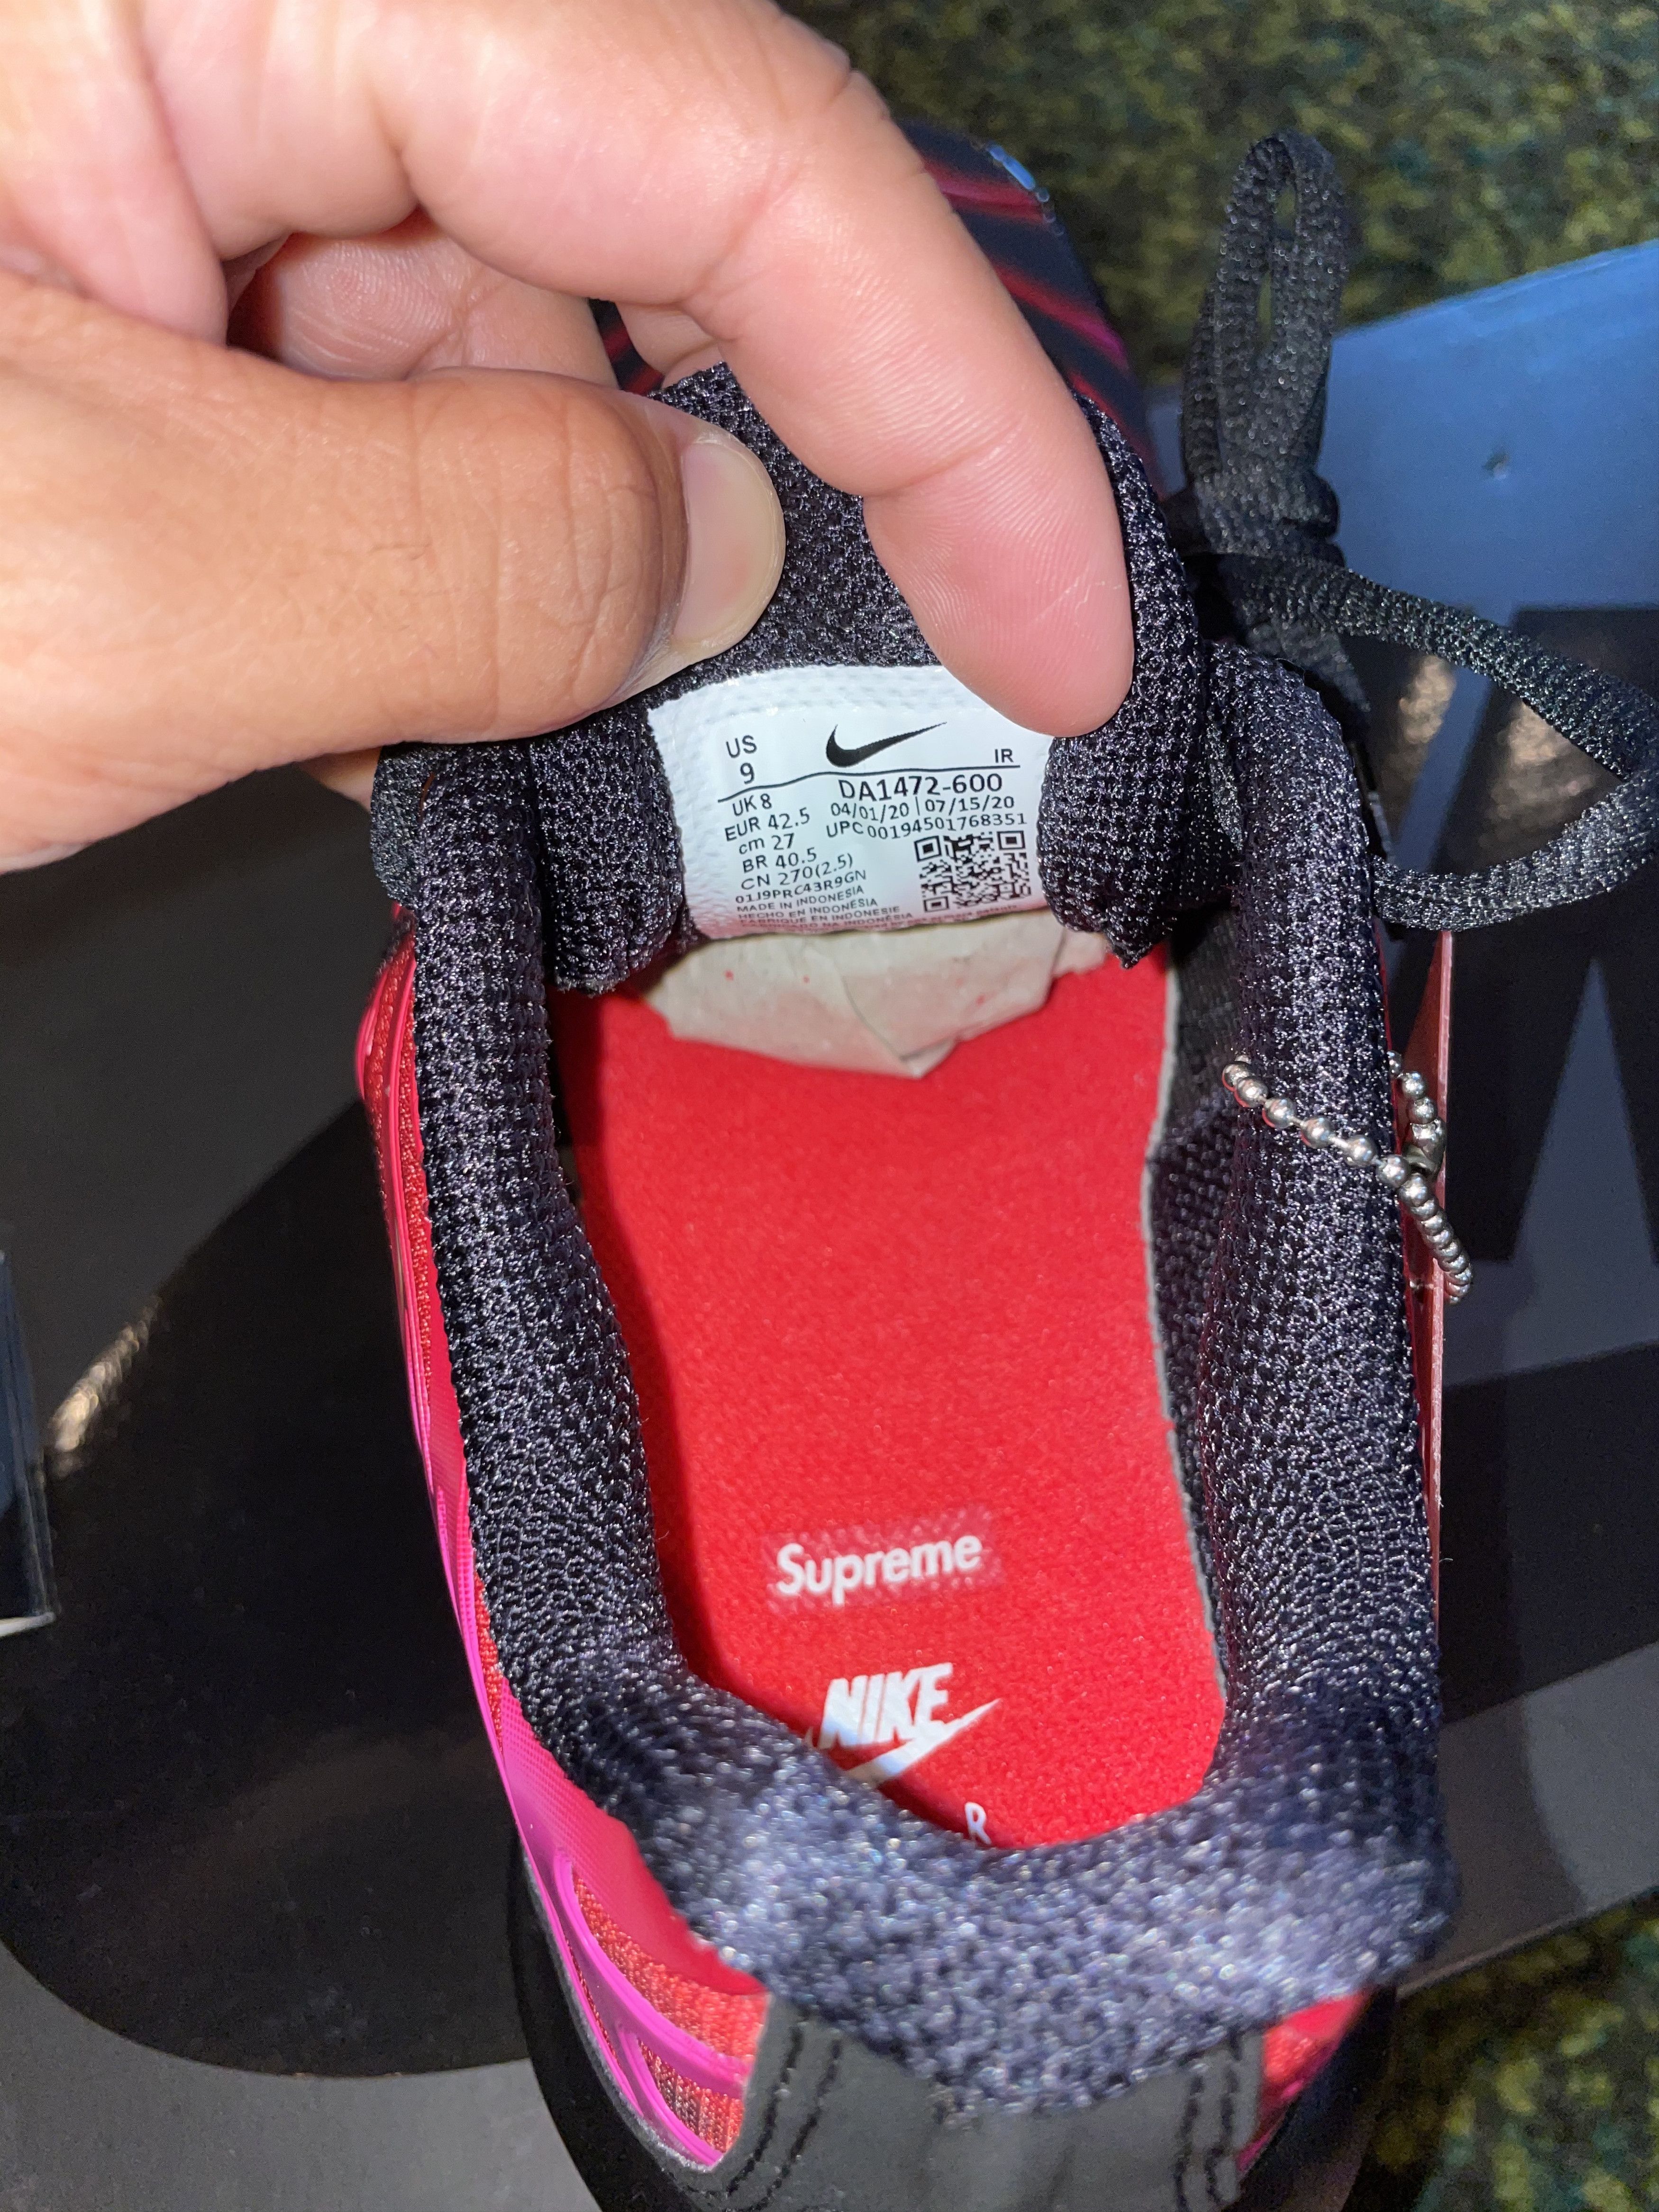 Supreme Supreme x Nike Air Max Plus Black Size US 9 / EU 42 - 6 Thumbnail